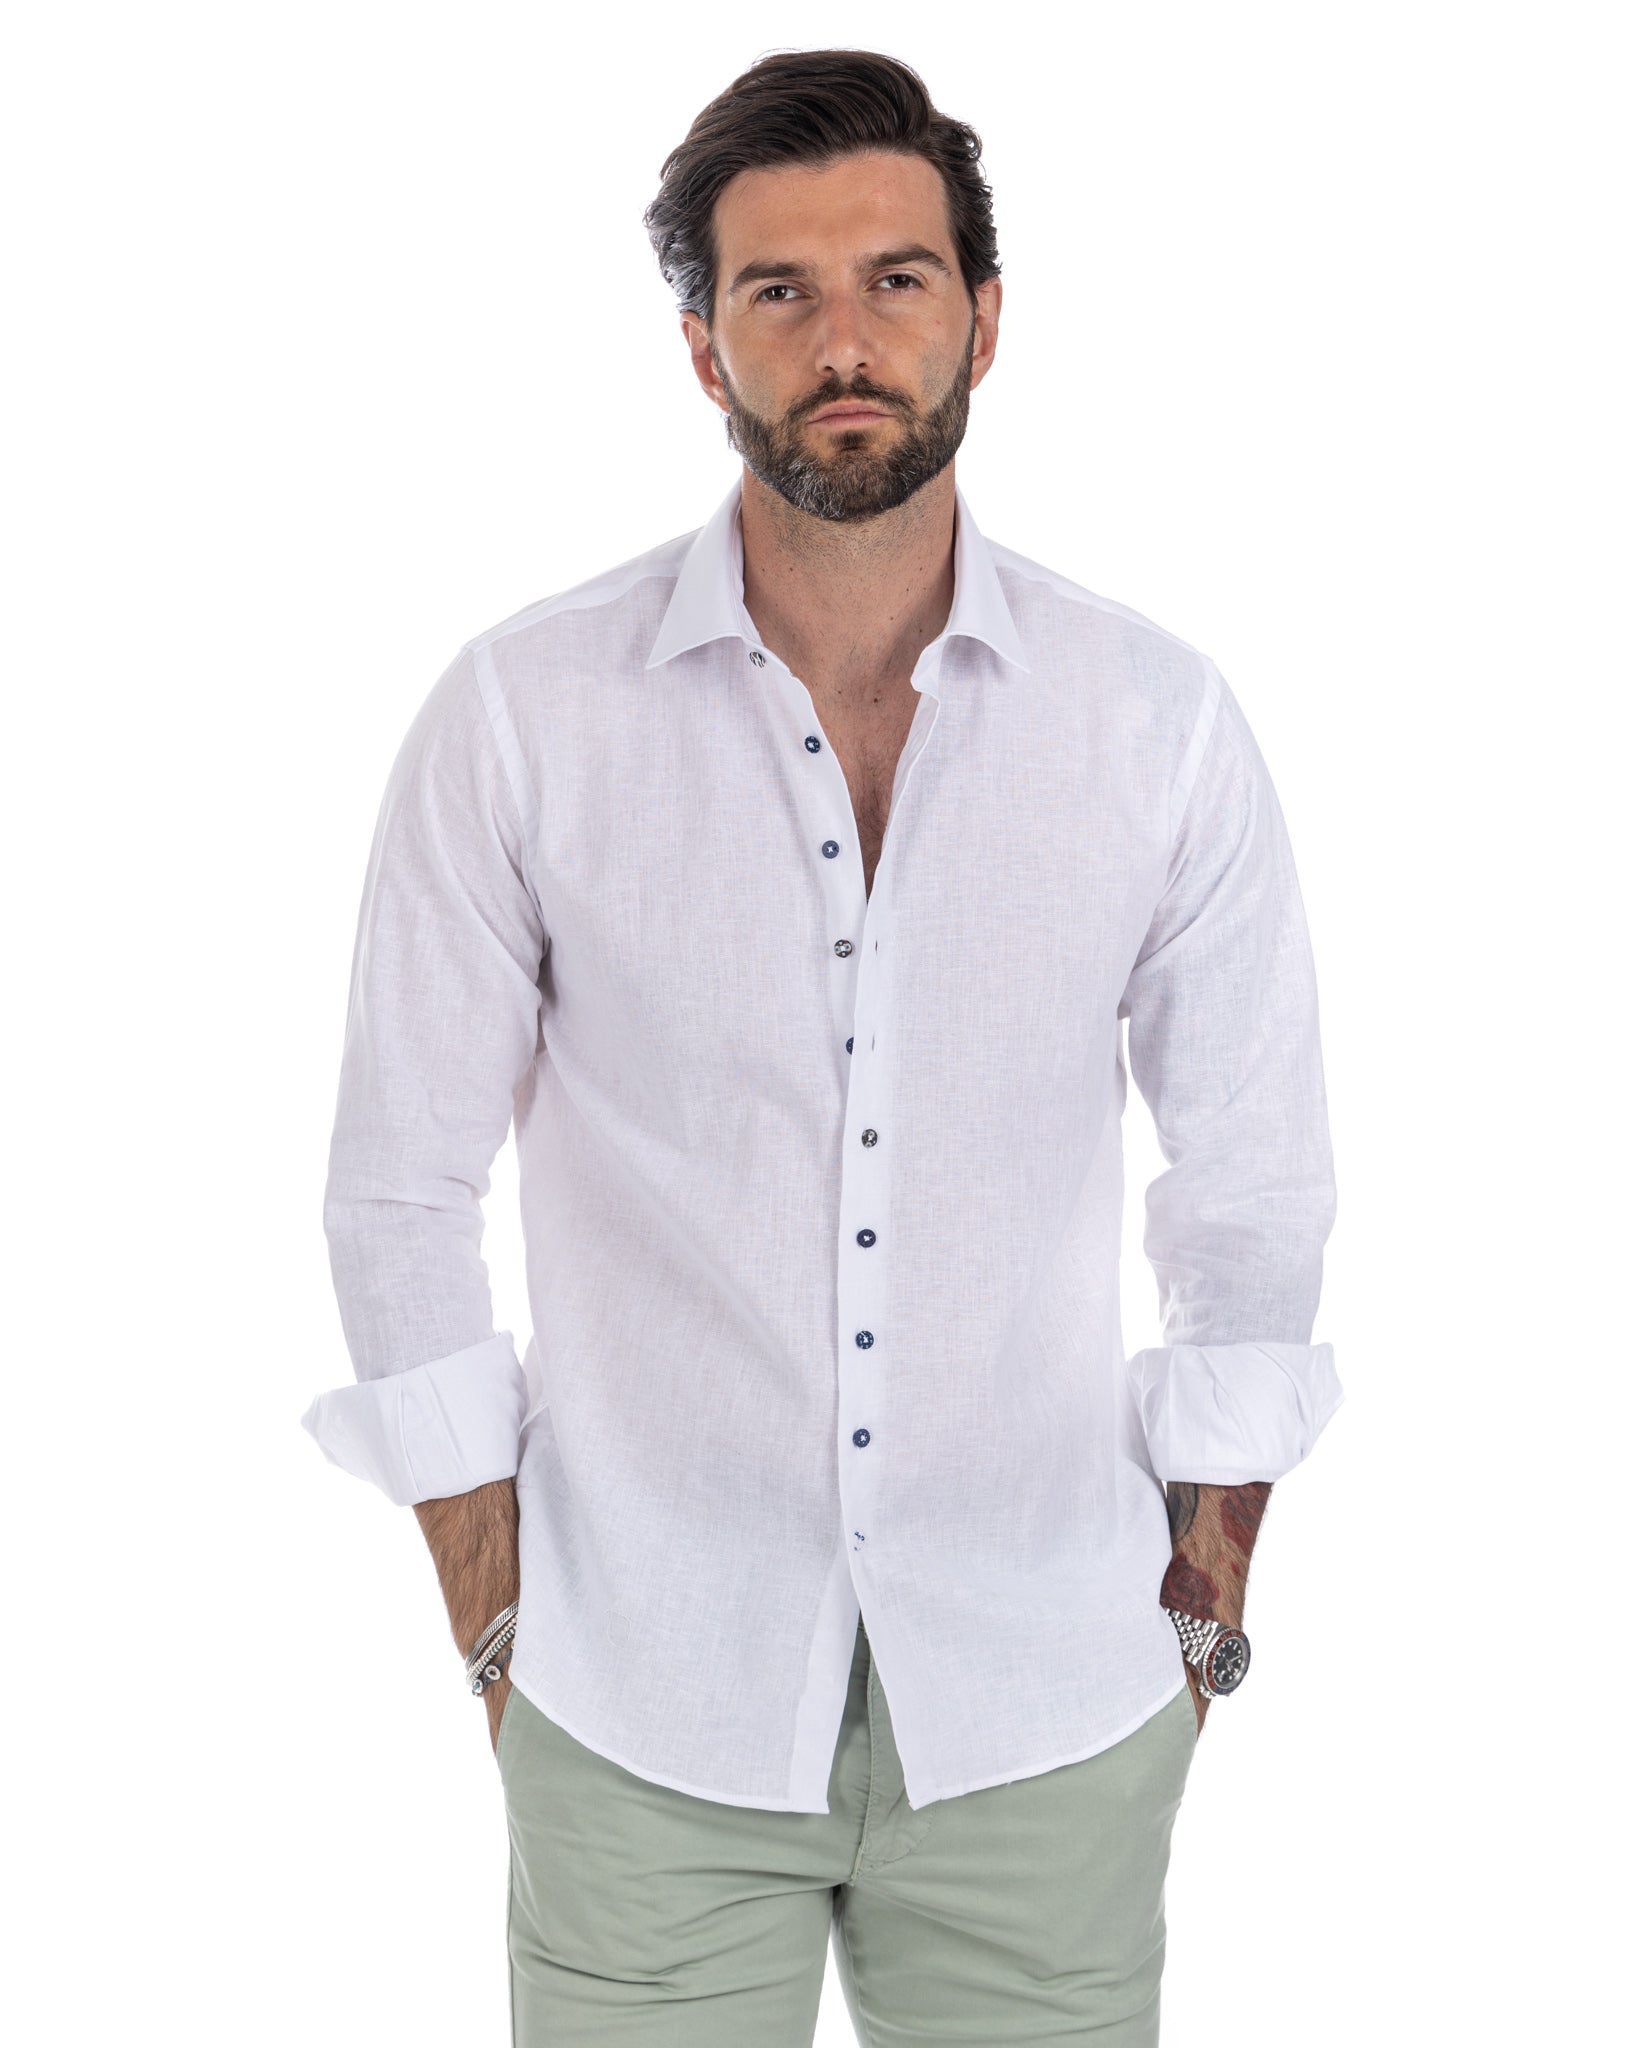 Praiano - camicia francese in lino bianco